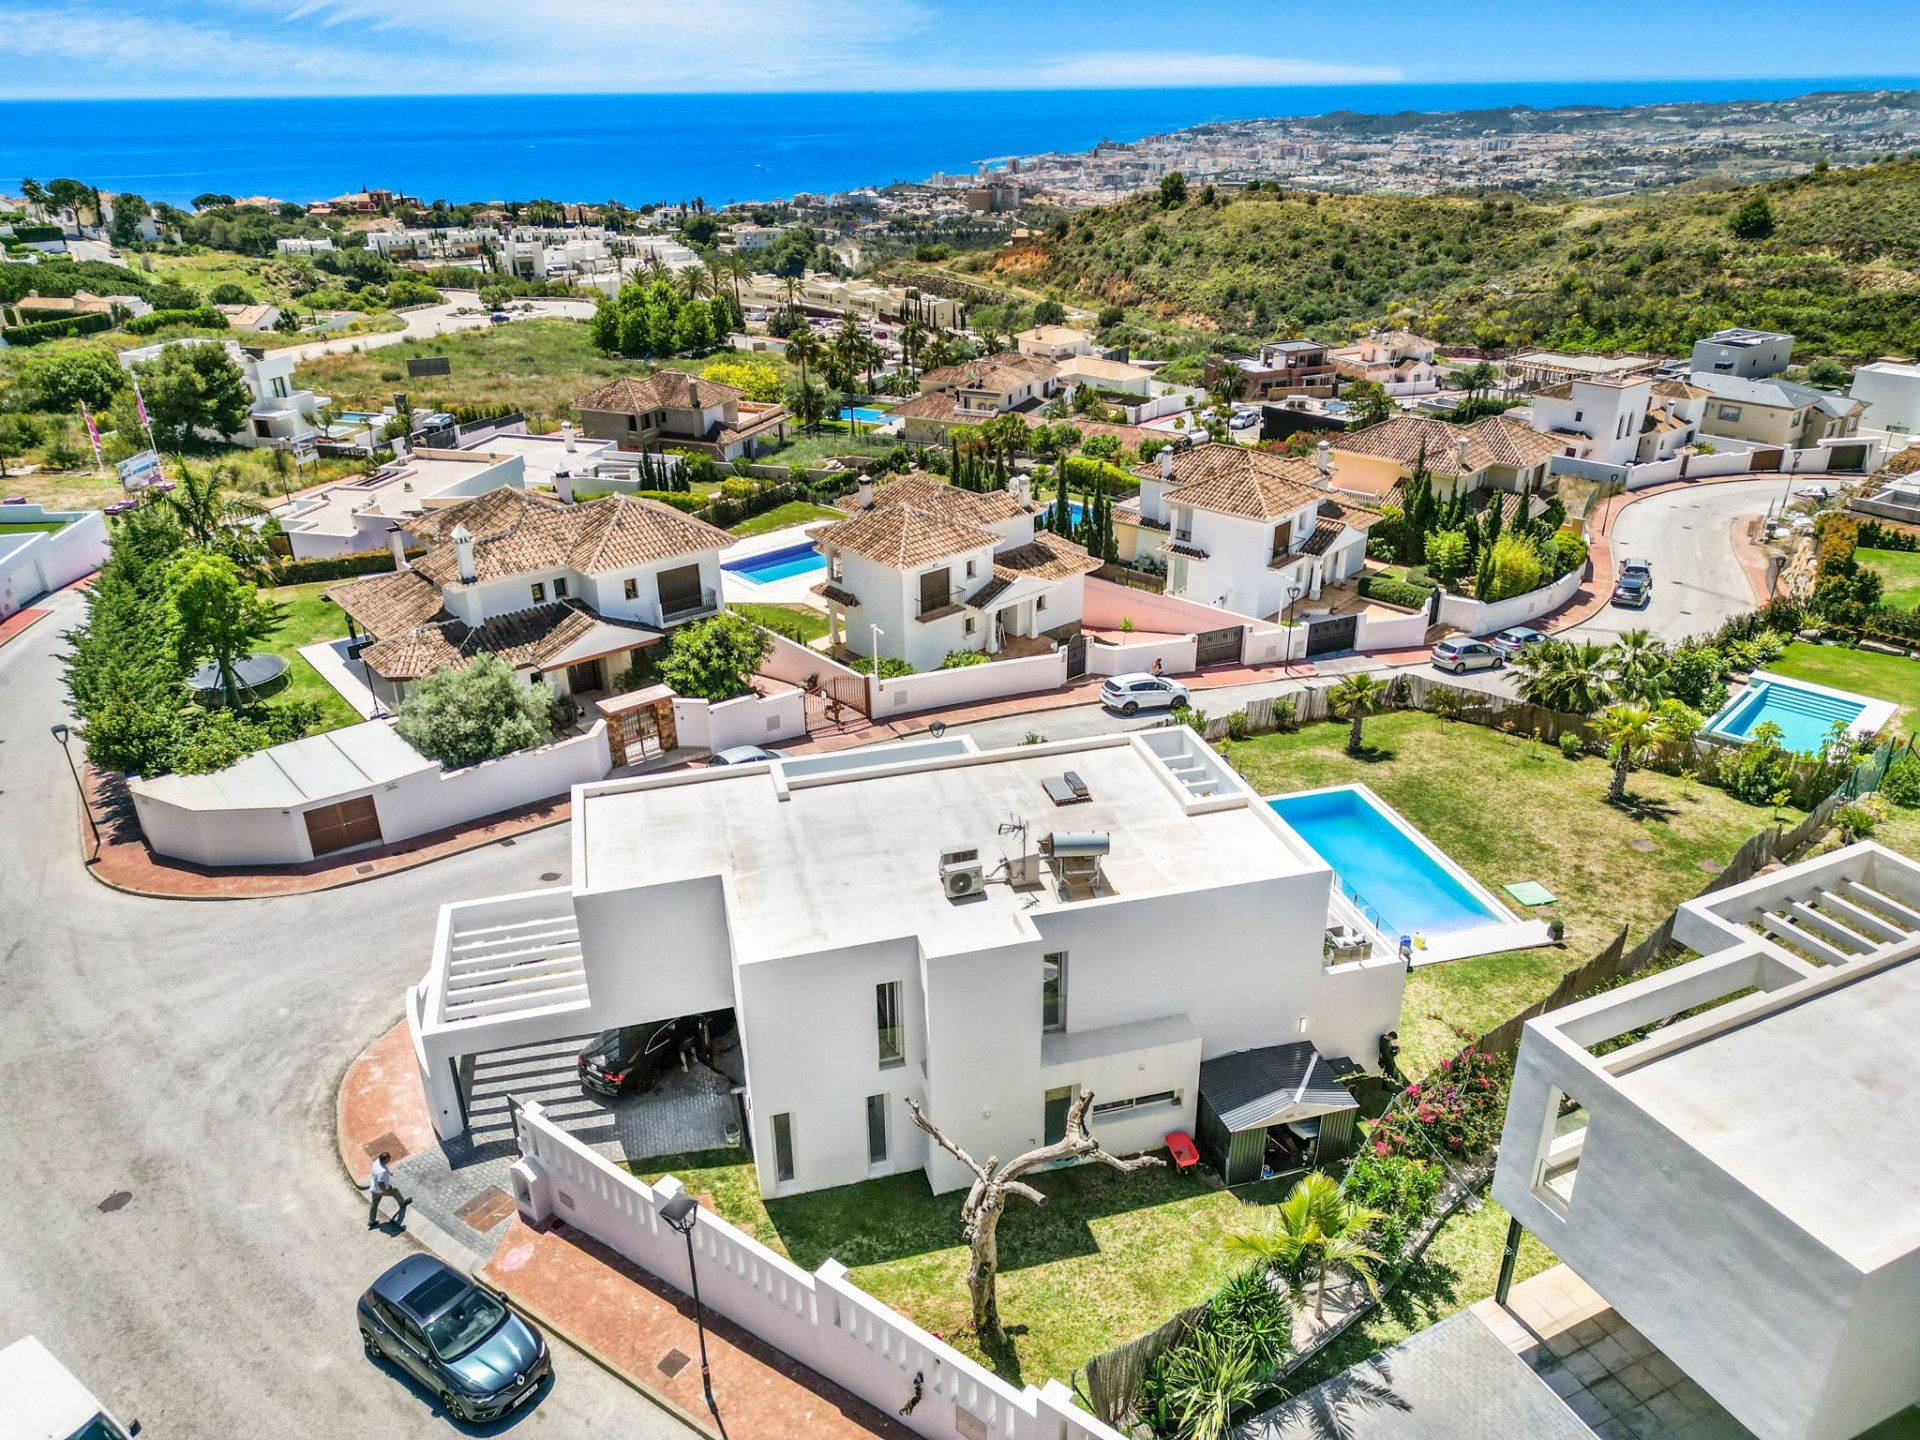 Espectacular villa con orientación sur situada en Buena Vista, Mijas con impresionantes vistas al mar